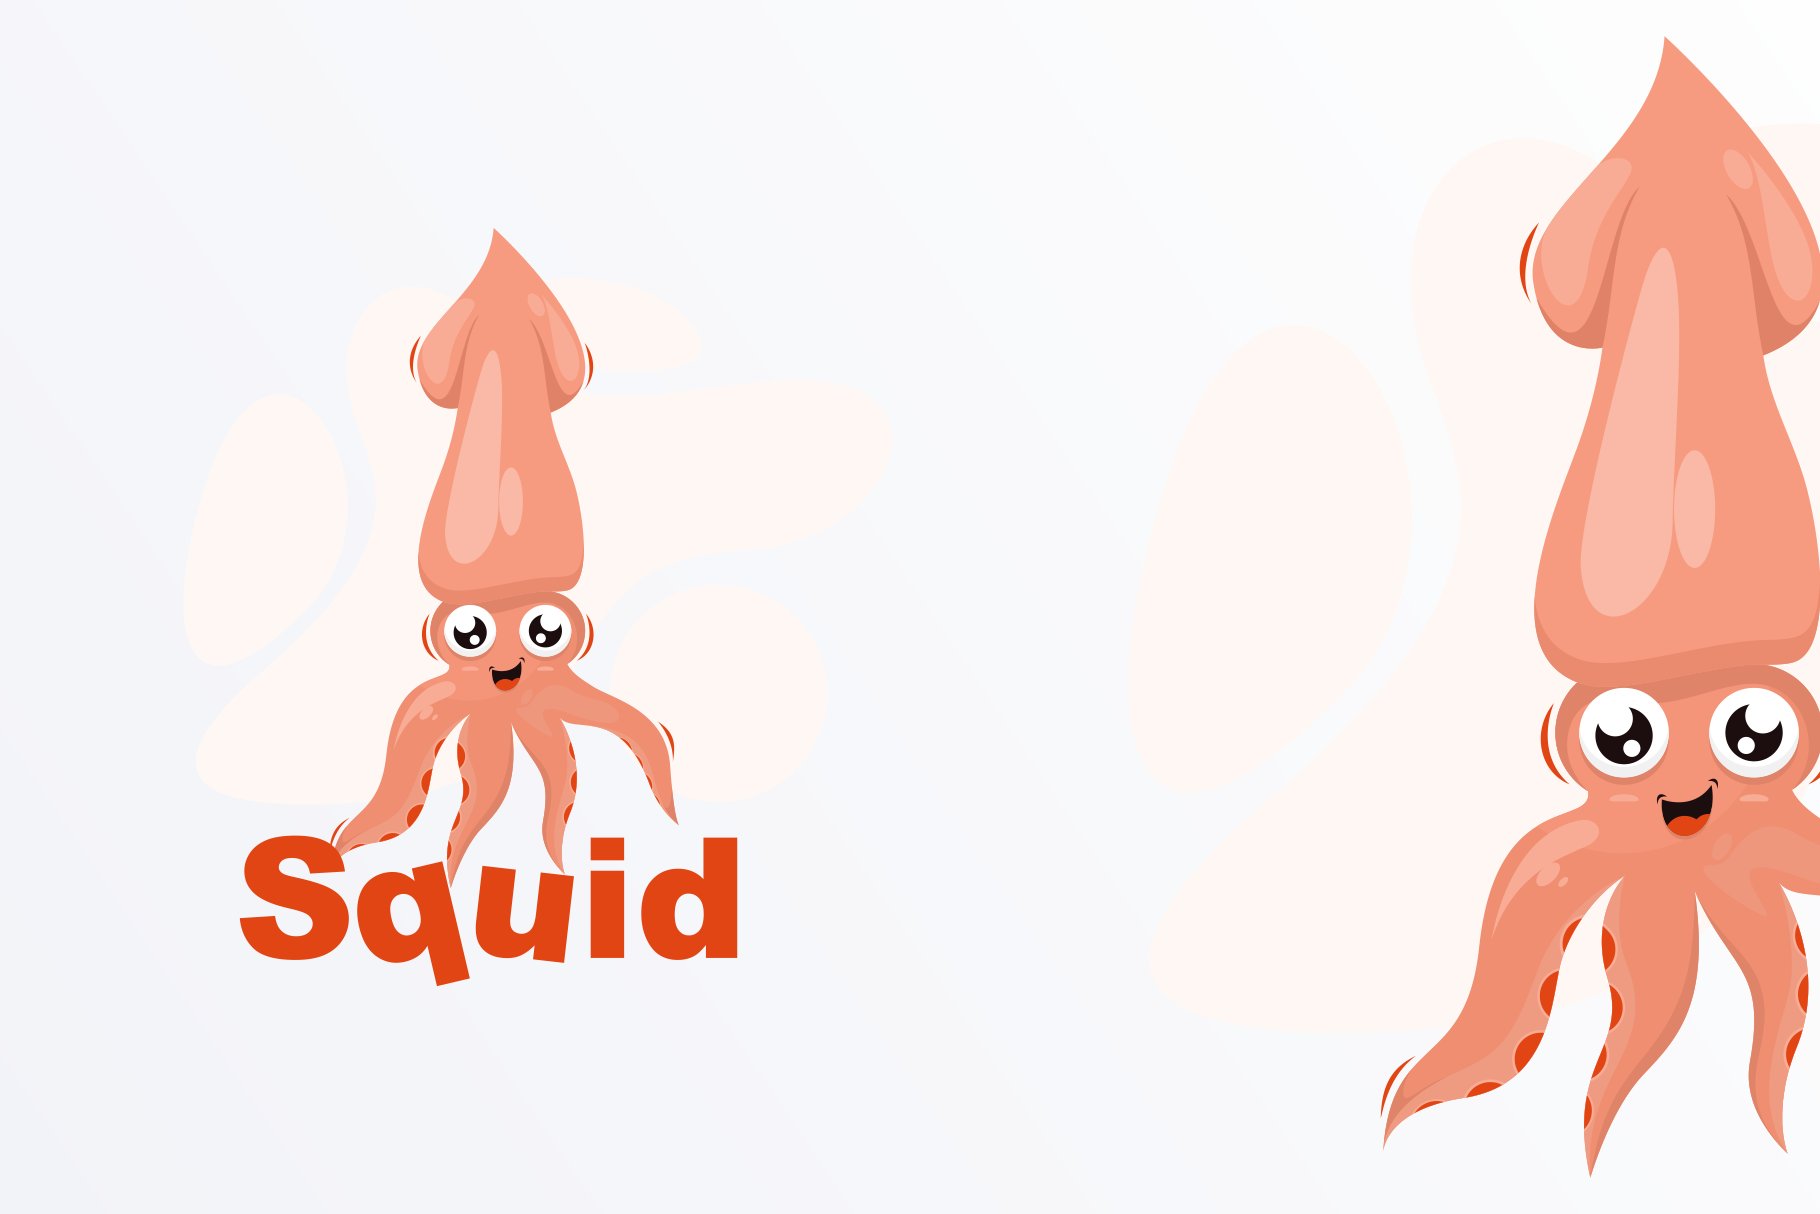 Cute Squid Illustration Design cover image.